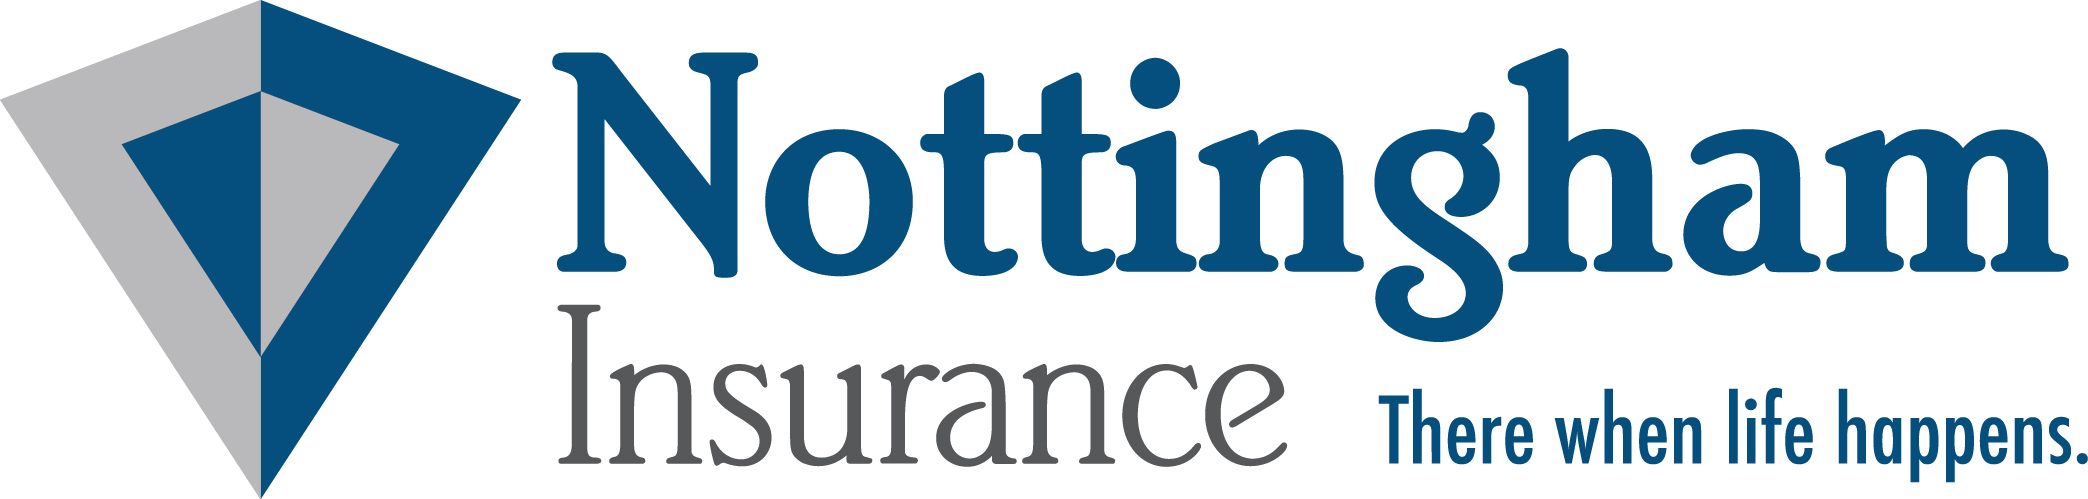 Nottingham Insurance